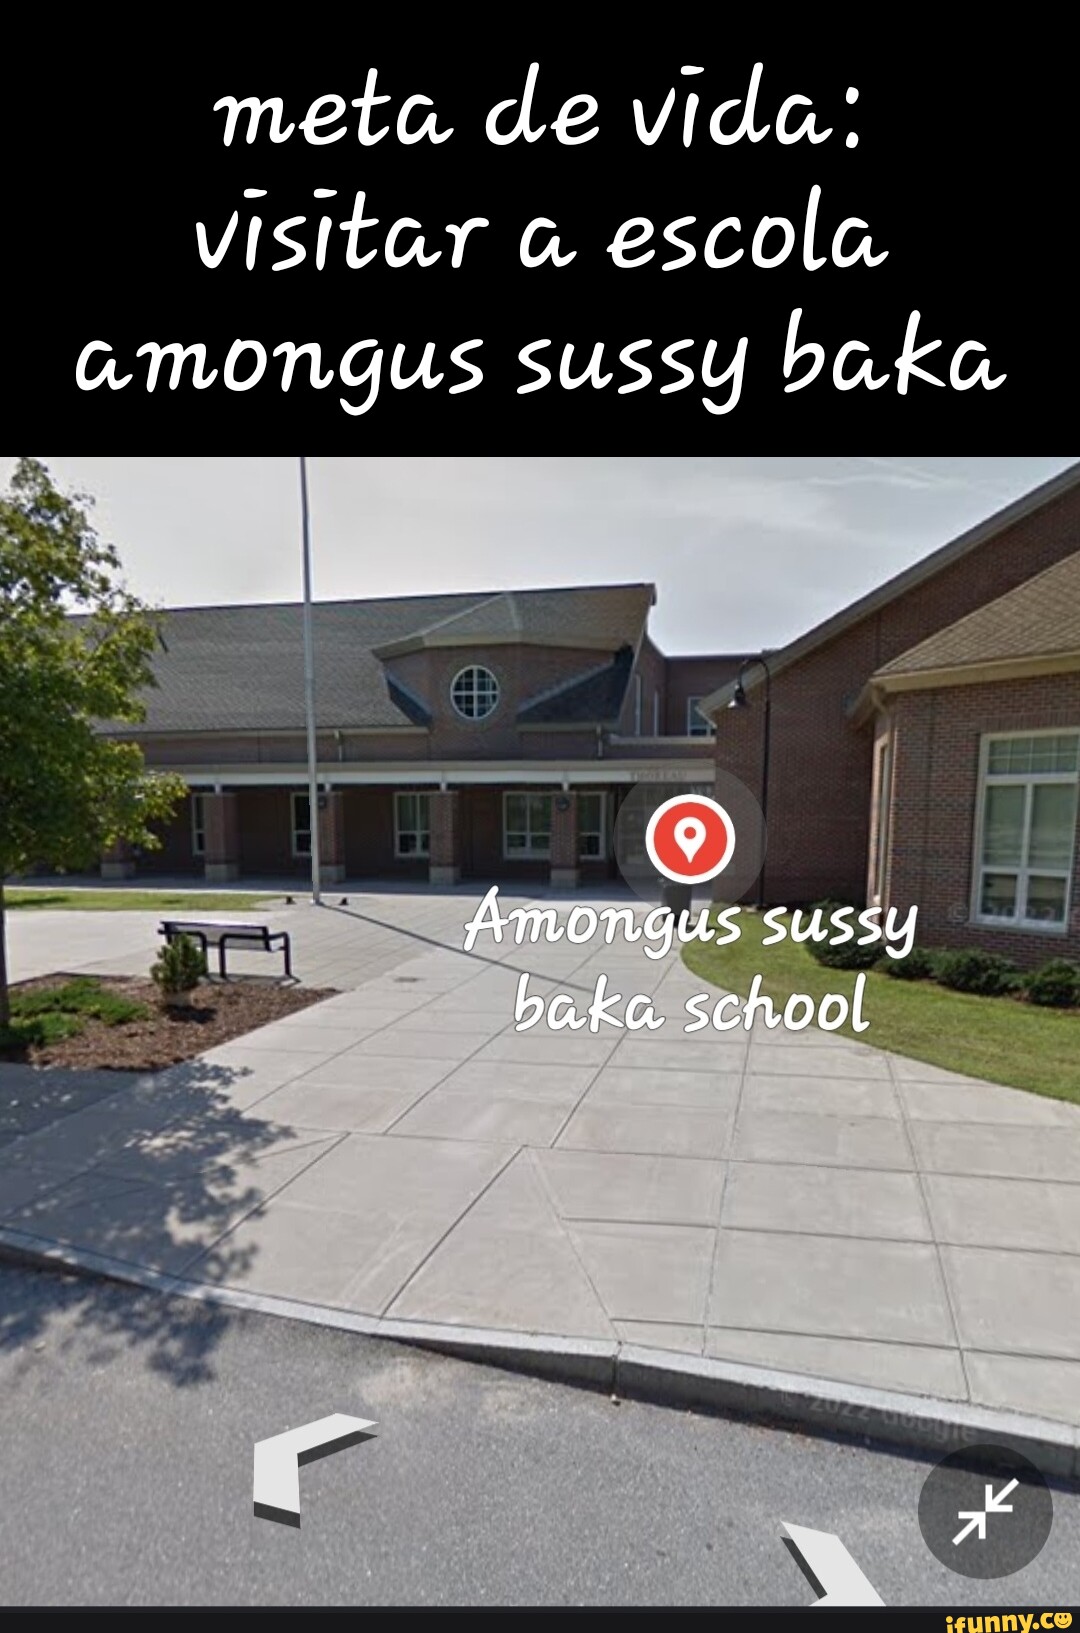 Winy, Just Sussy Baka Amogus Shrine See similar places 'Sussy Baka Google  Sussy lanes - iFunny